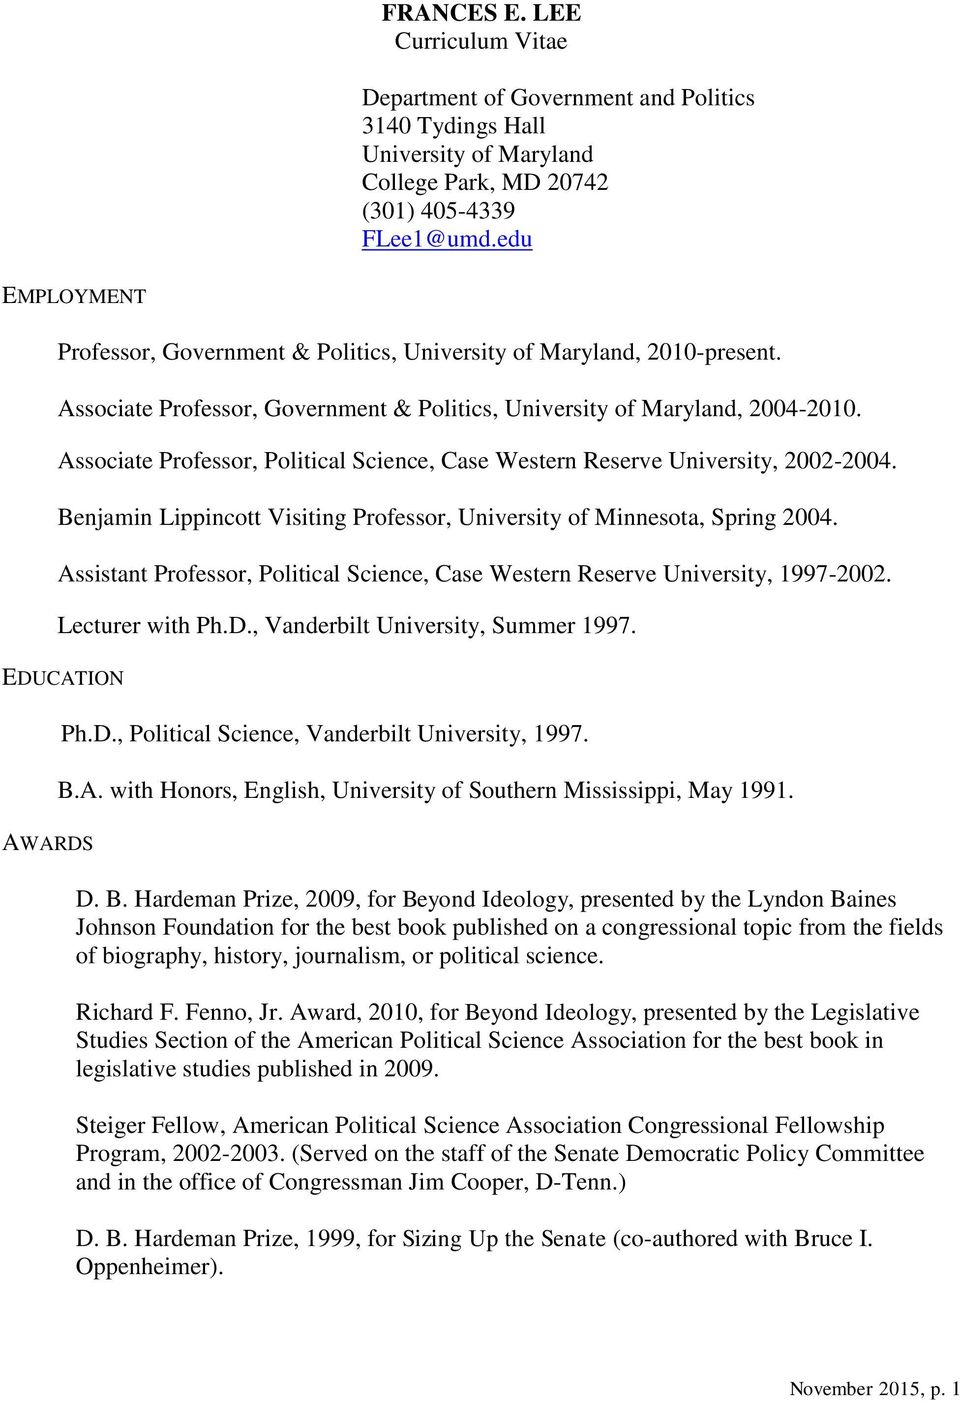 Frances E Lee Curriculum Vitae Professor Government Politics